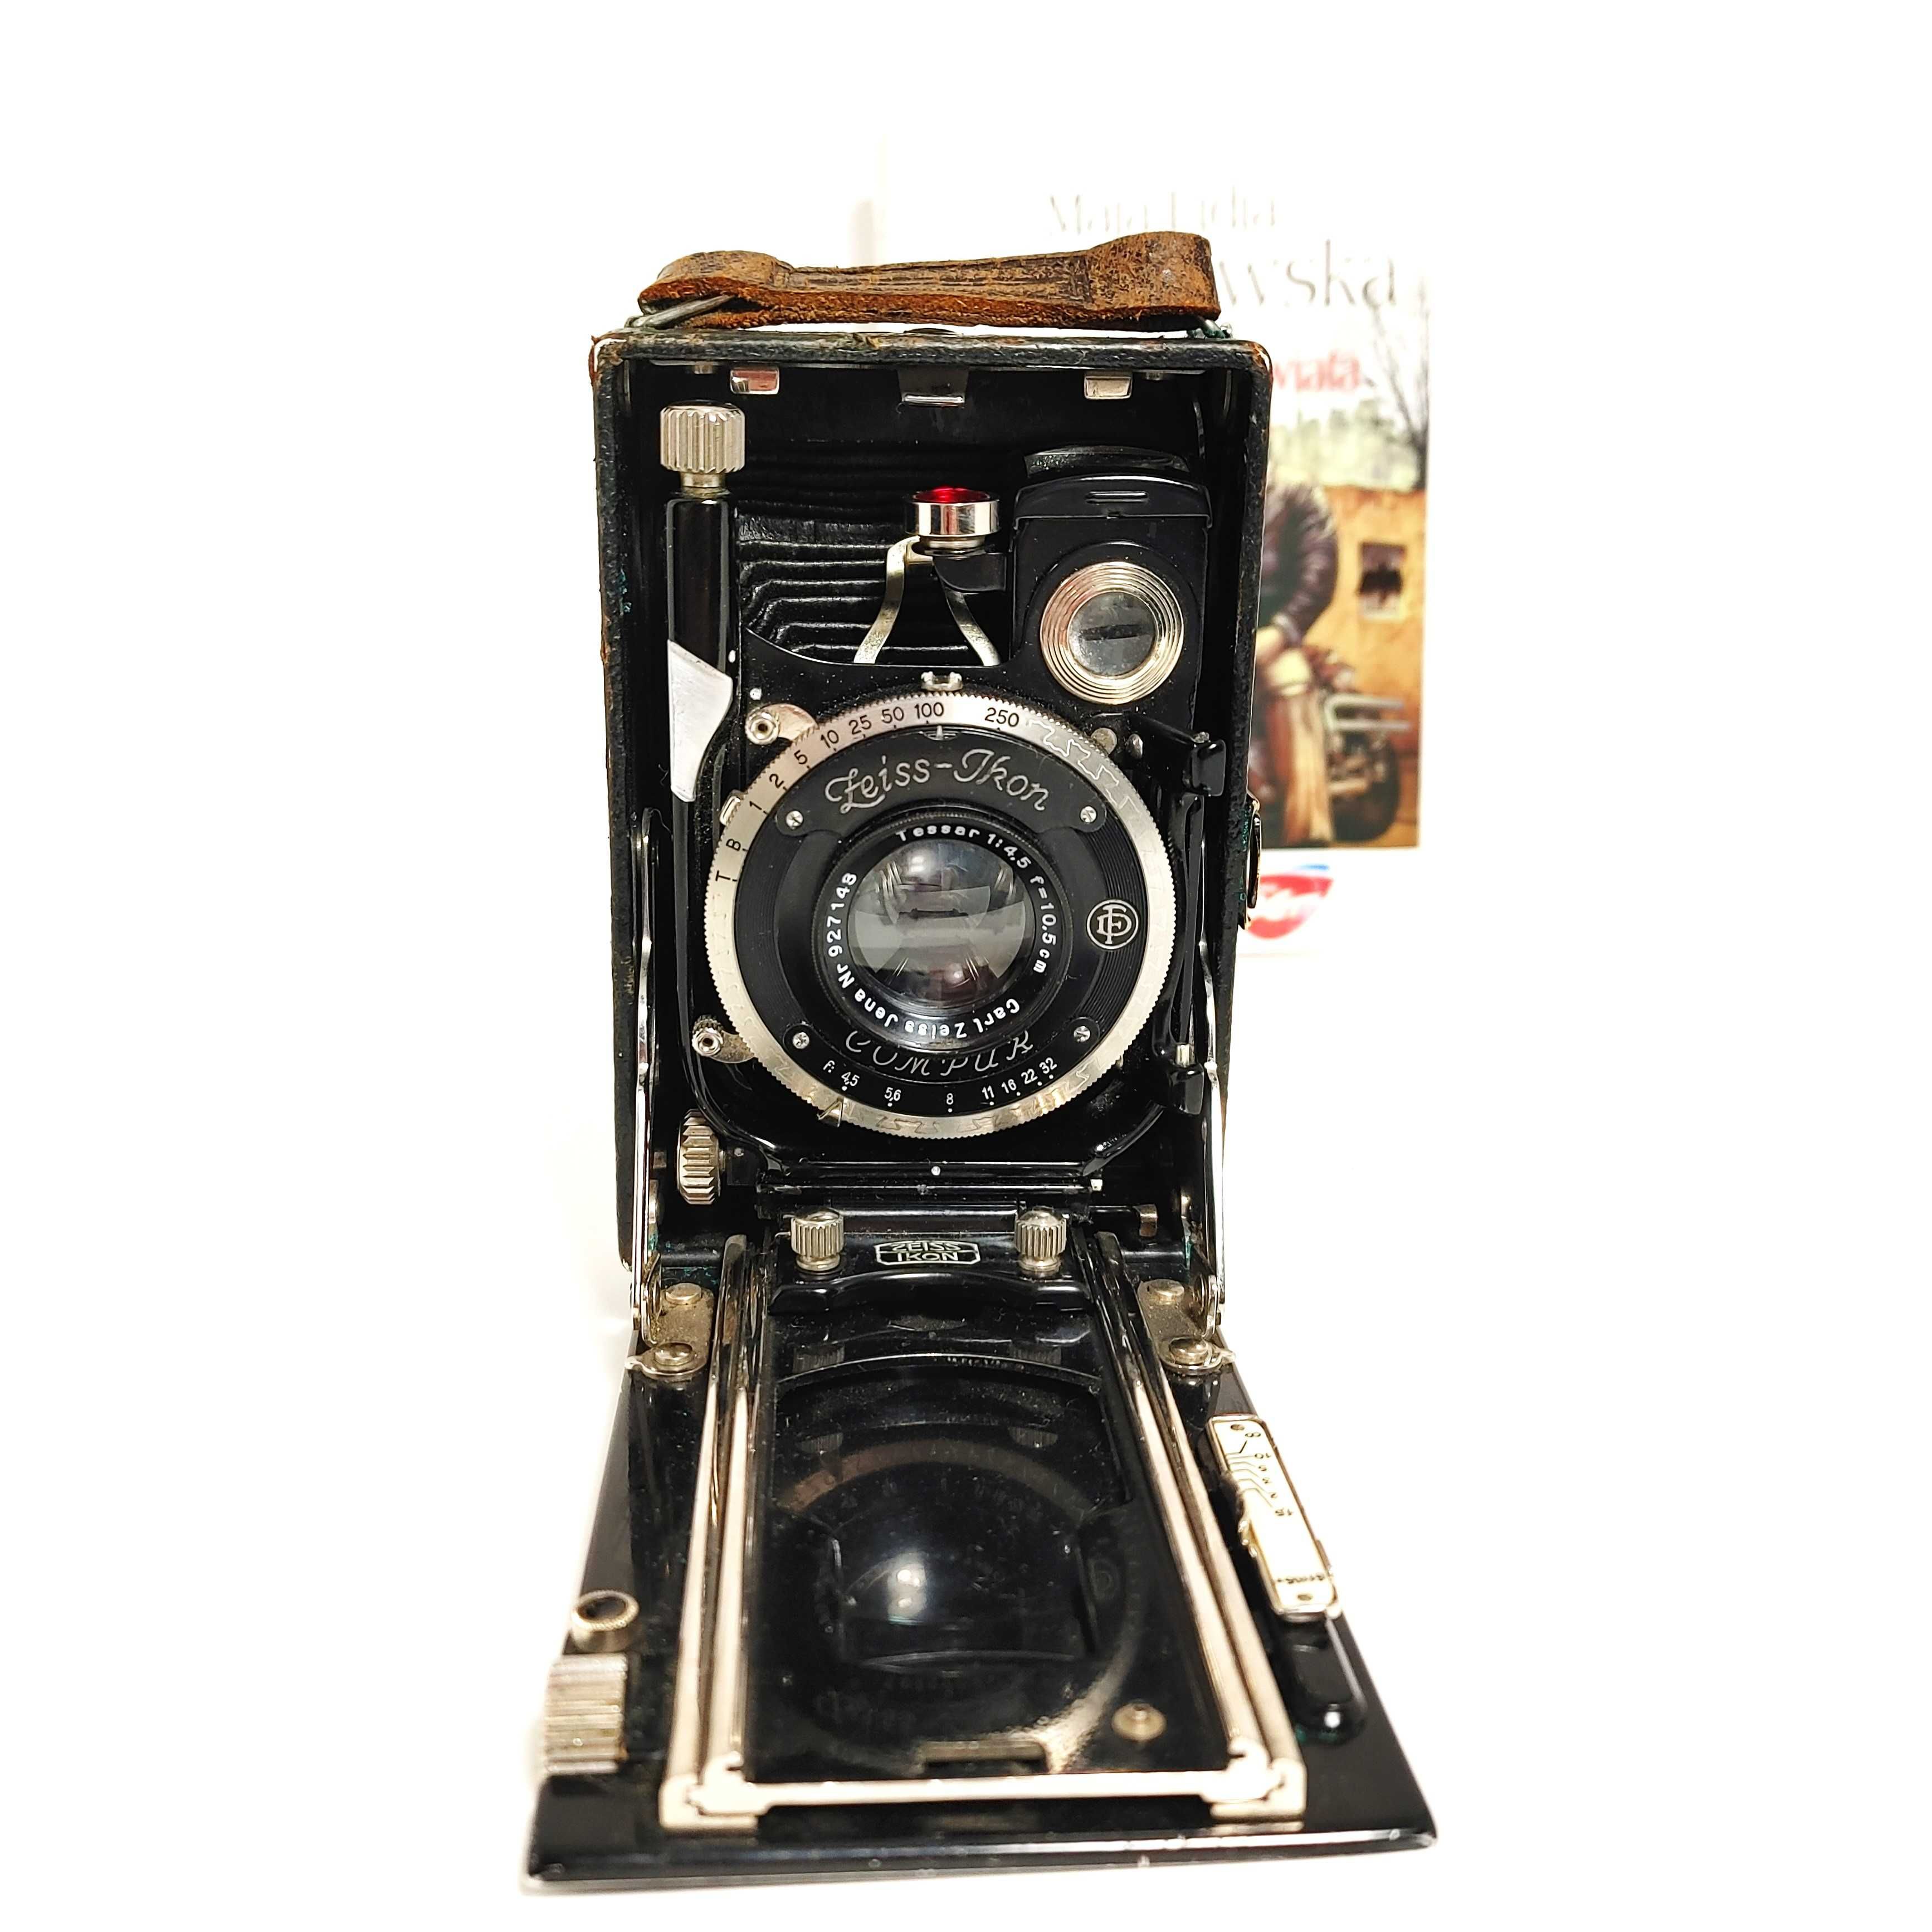 Rarytas Mieszkowy aparat płytowy Zeiss Ikon TRONA 210/3 z 1926 roku